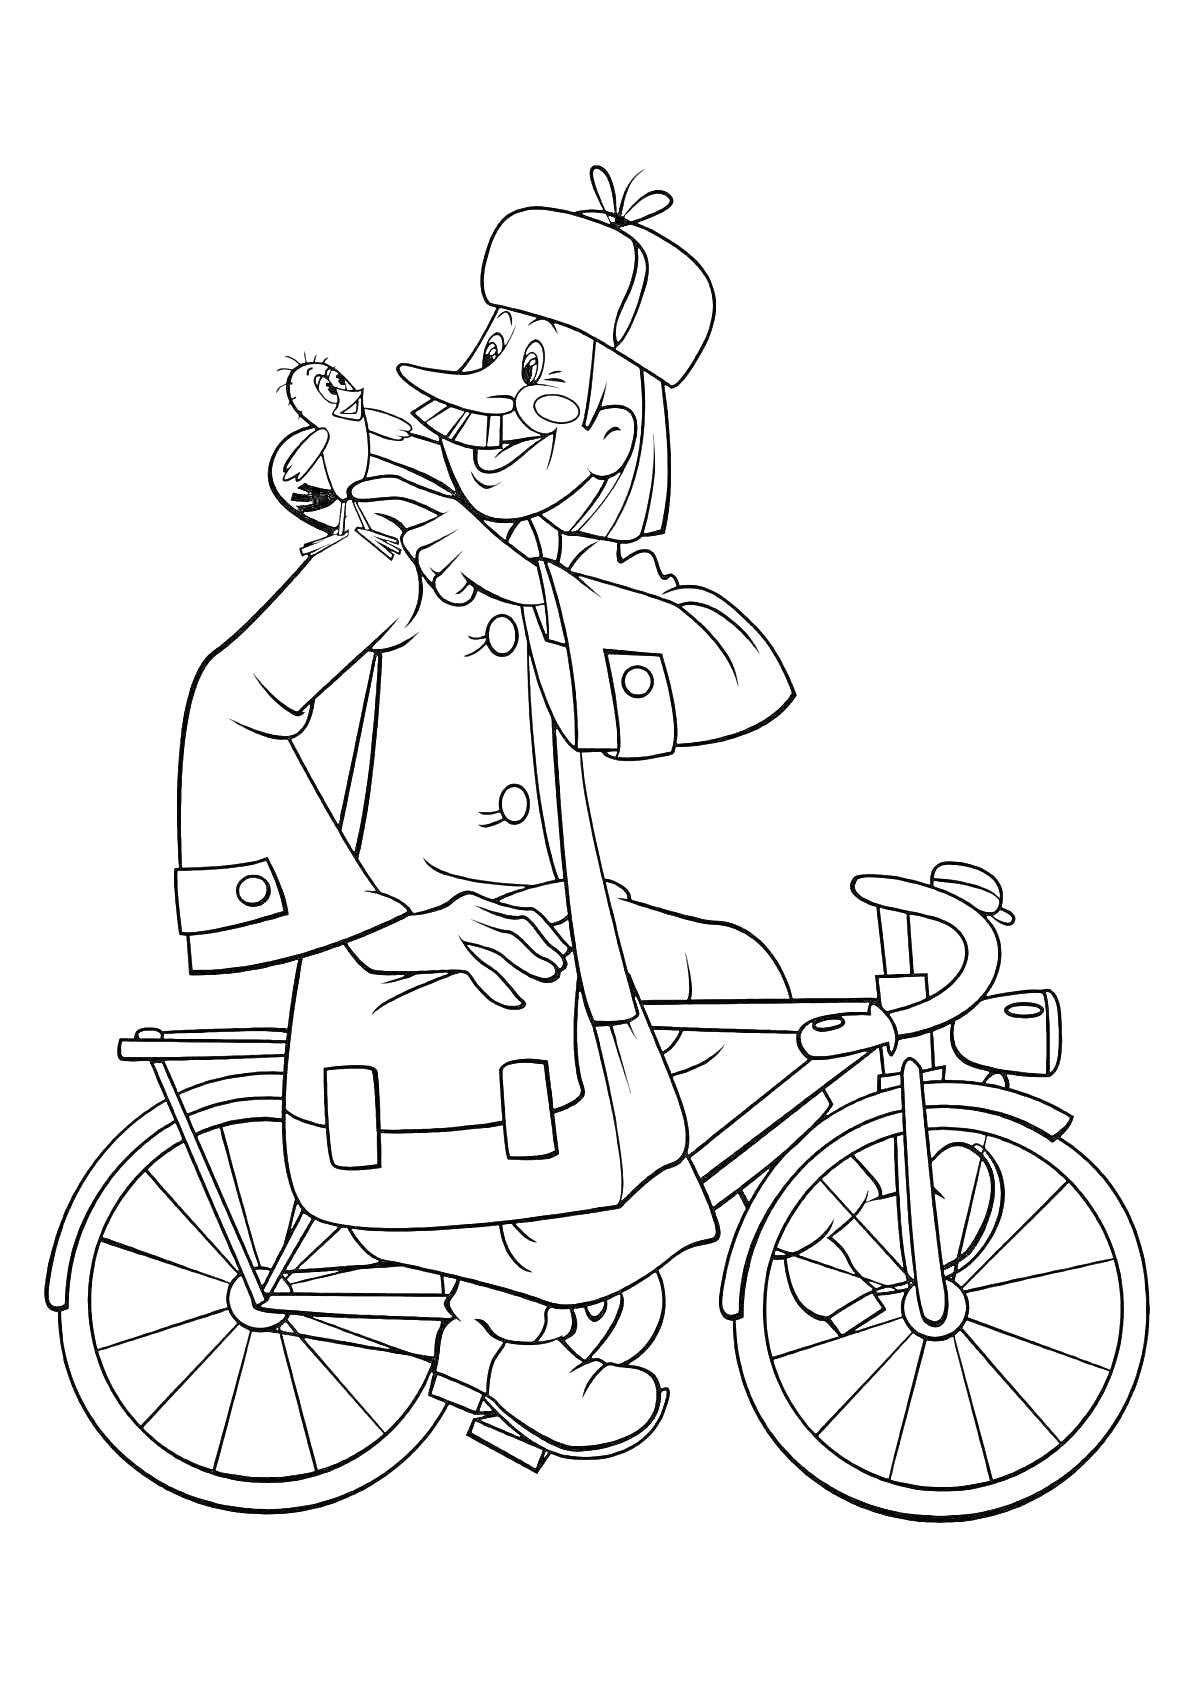 Раскраска Человек в пальто с птичкой на плече, стоящий возле велосипеда